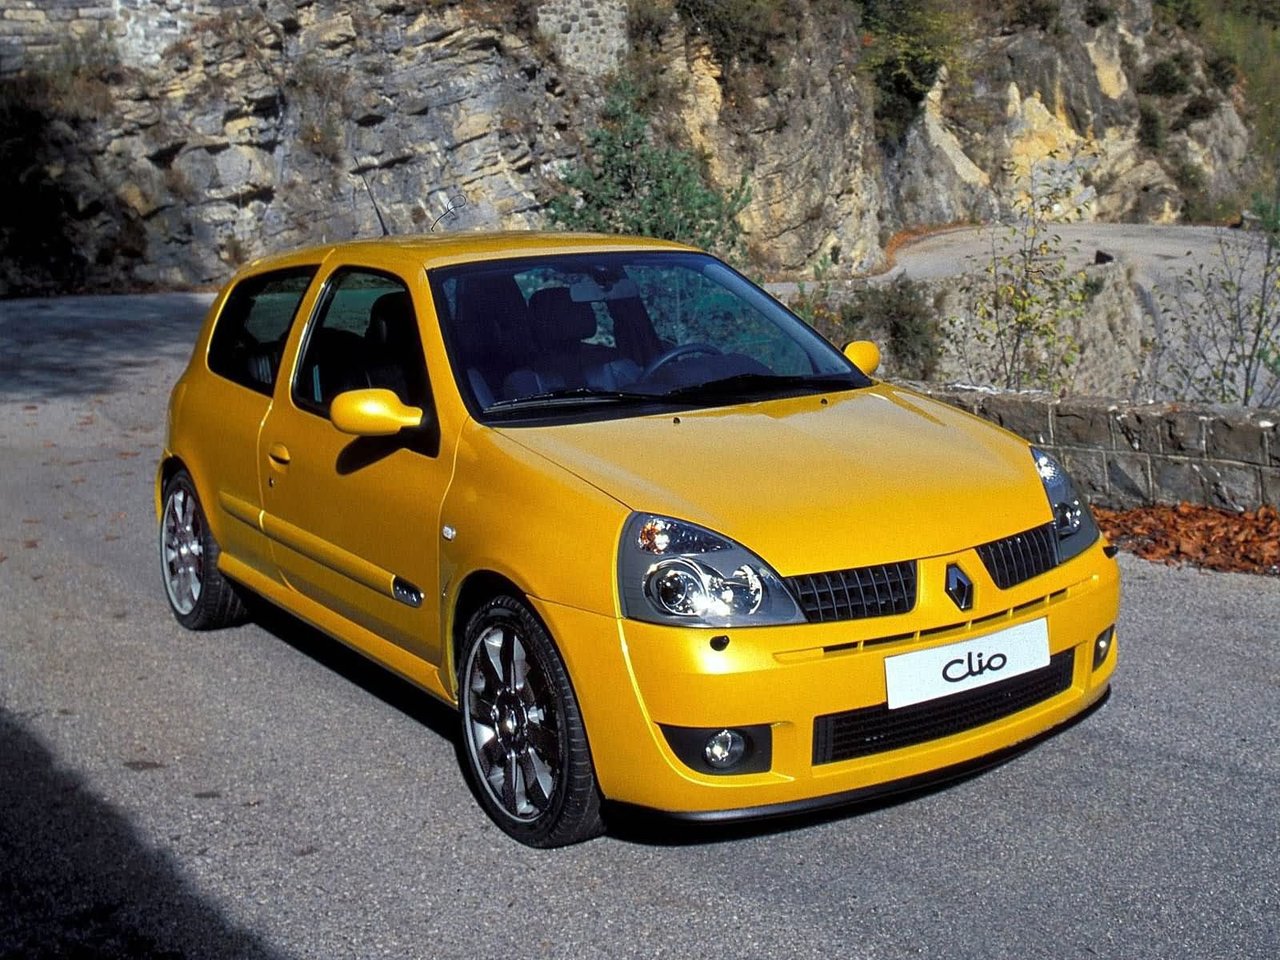 Расход газа одной комплектации хэтчбека три двери Renault Clio RS. Разница стоимости заправки газом и бензином. Автономный пробег до и после установки ГБО.